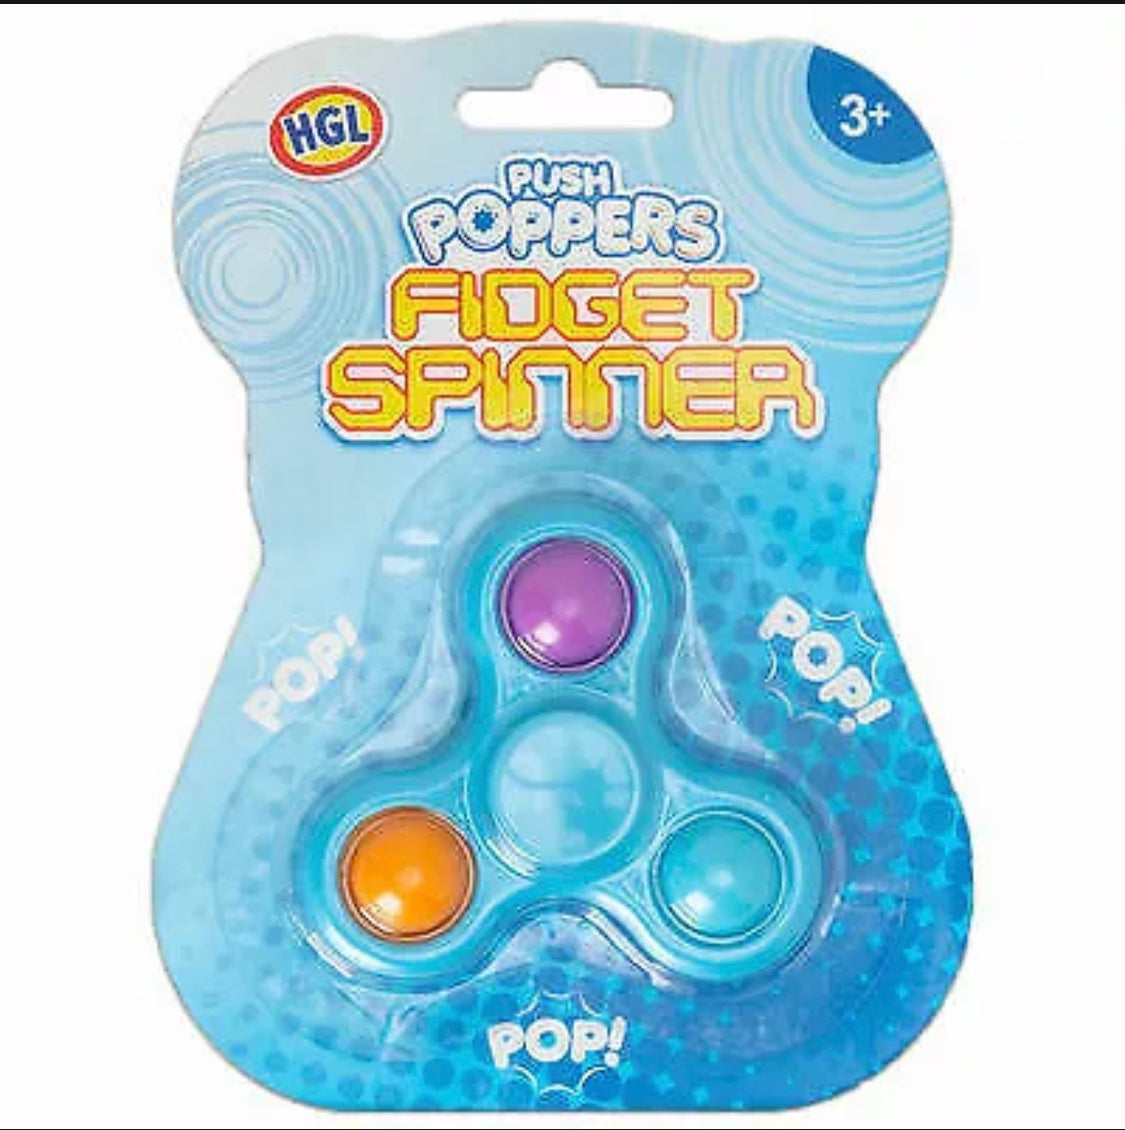 Push Popper Fidget Spinner